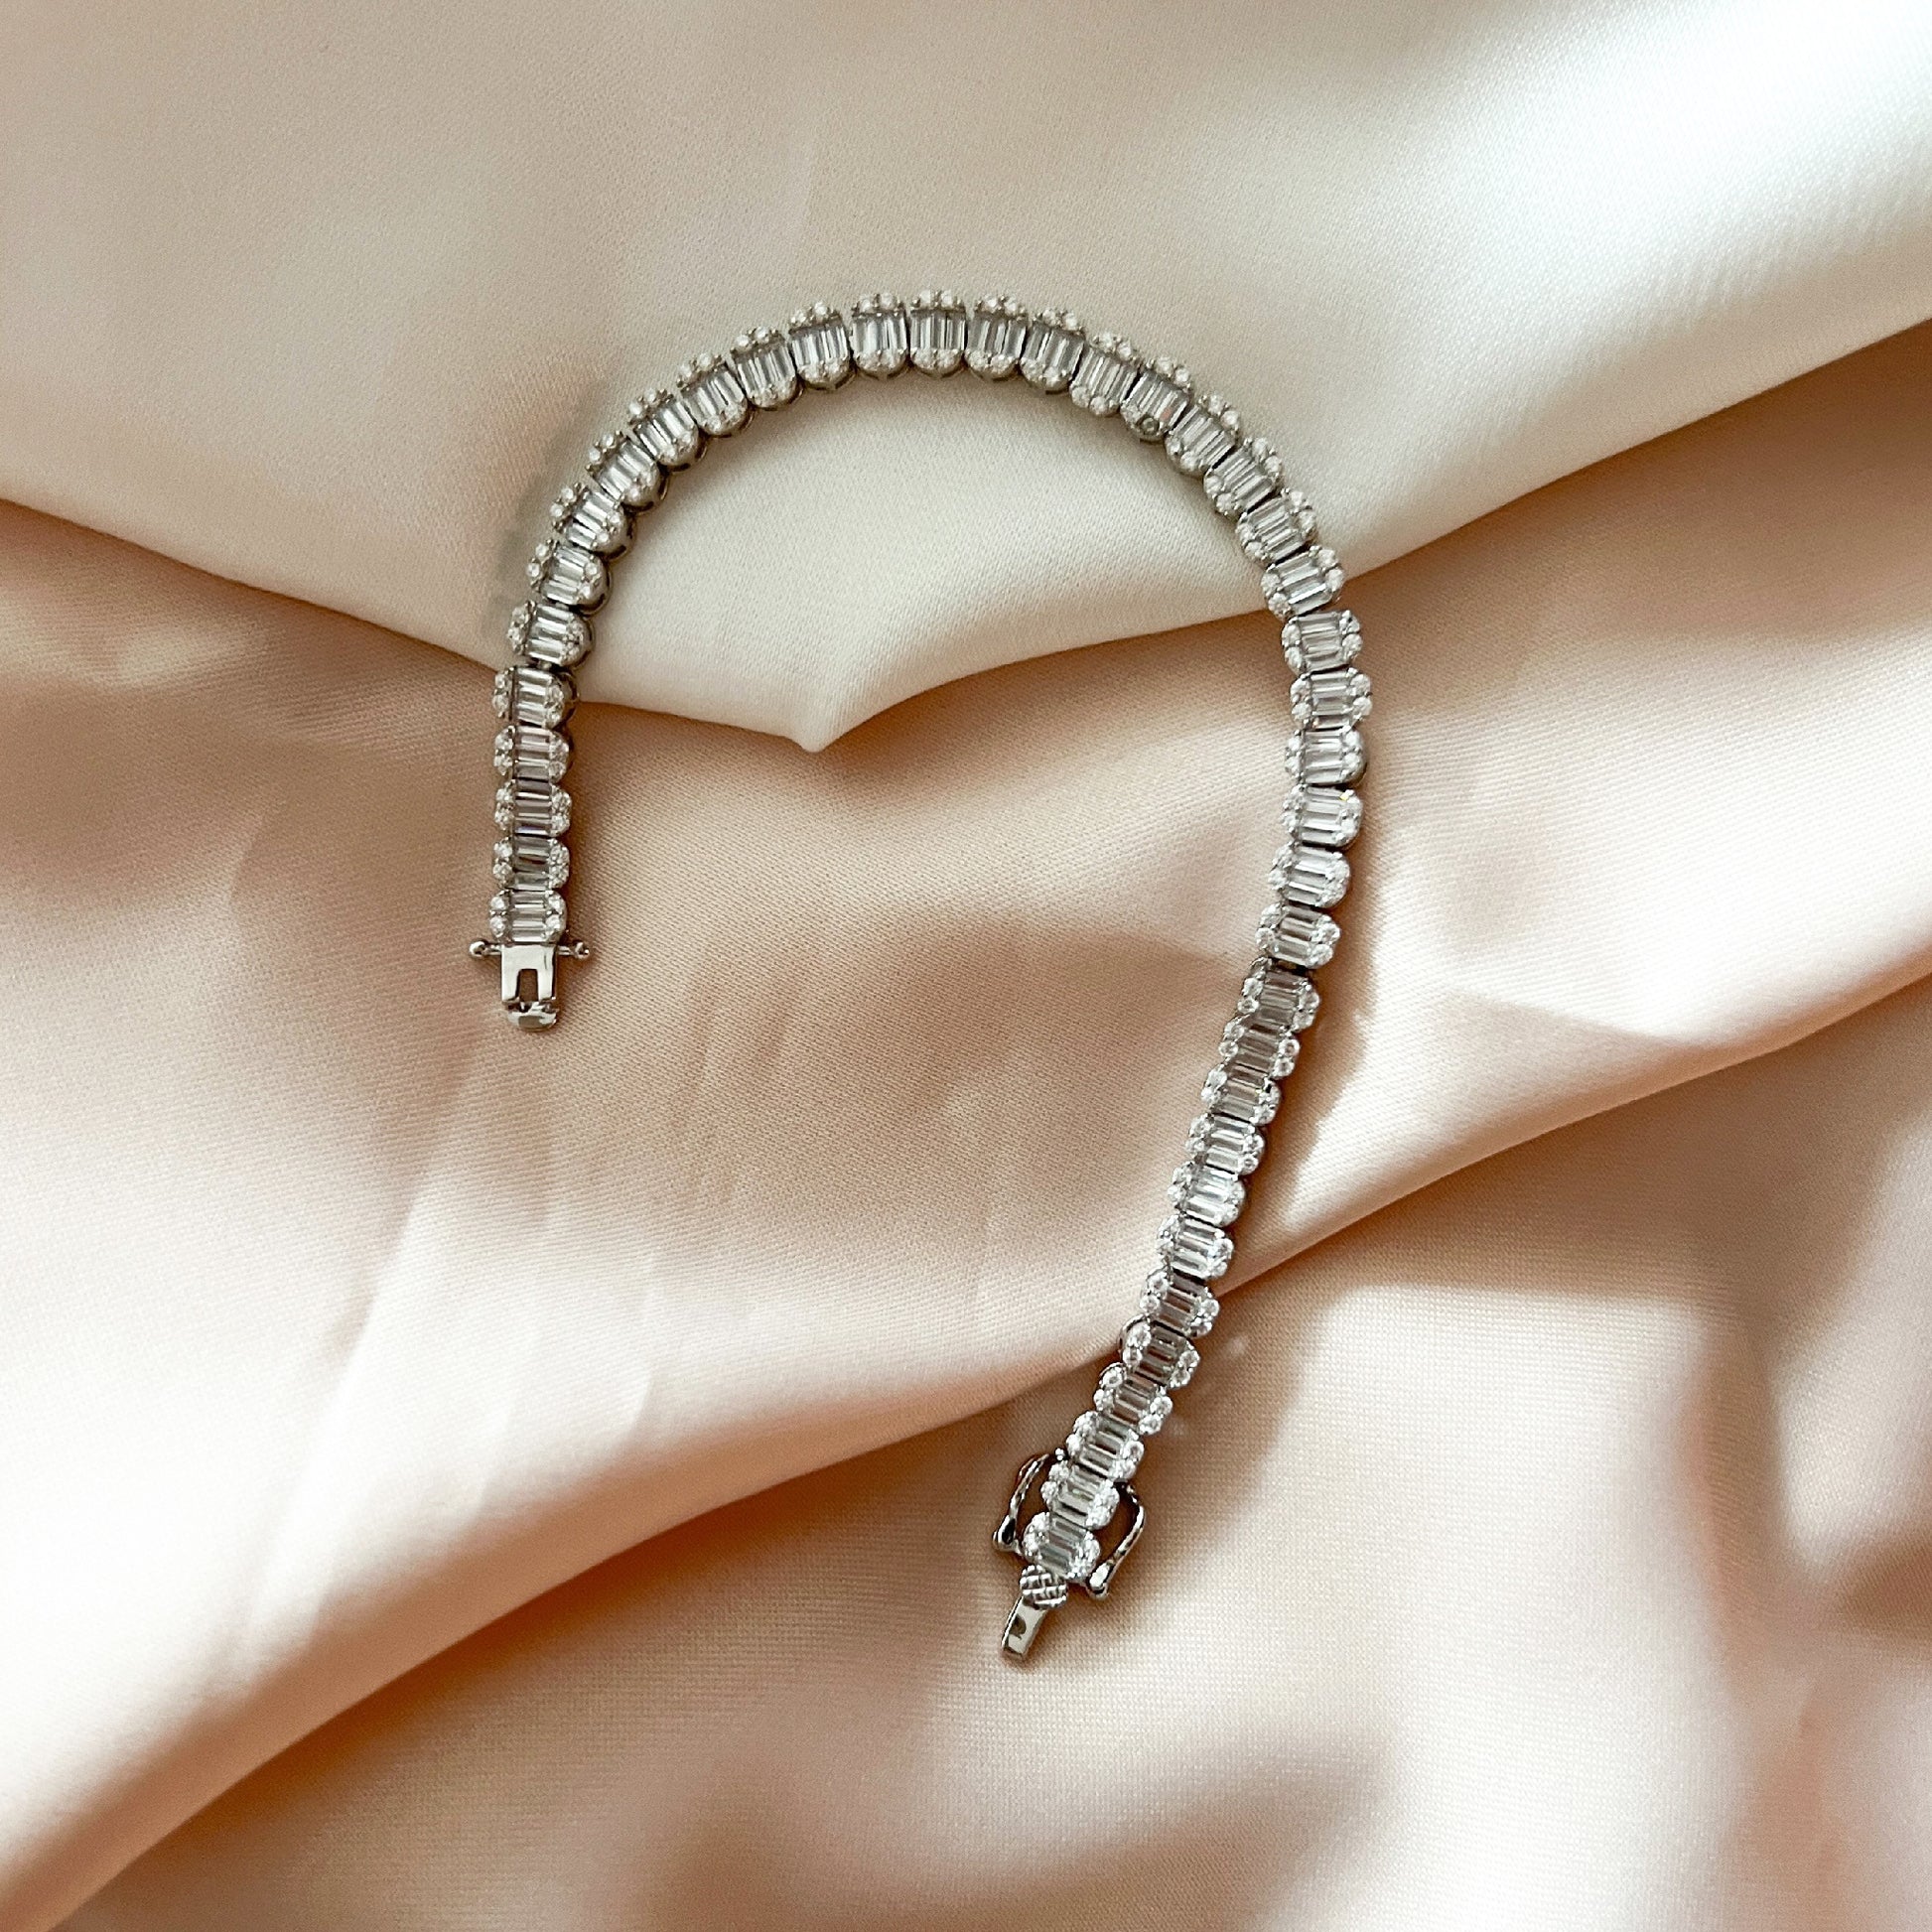 Oval Diamond Silver Tennis Bracelet from Alexandra Marks Jewelry